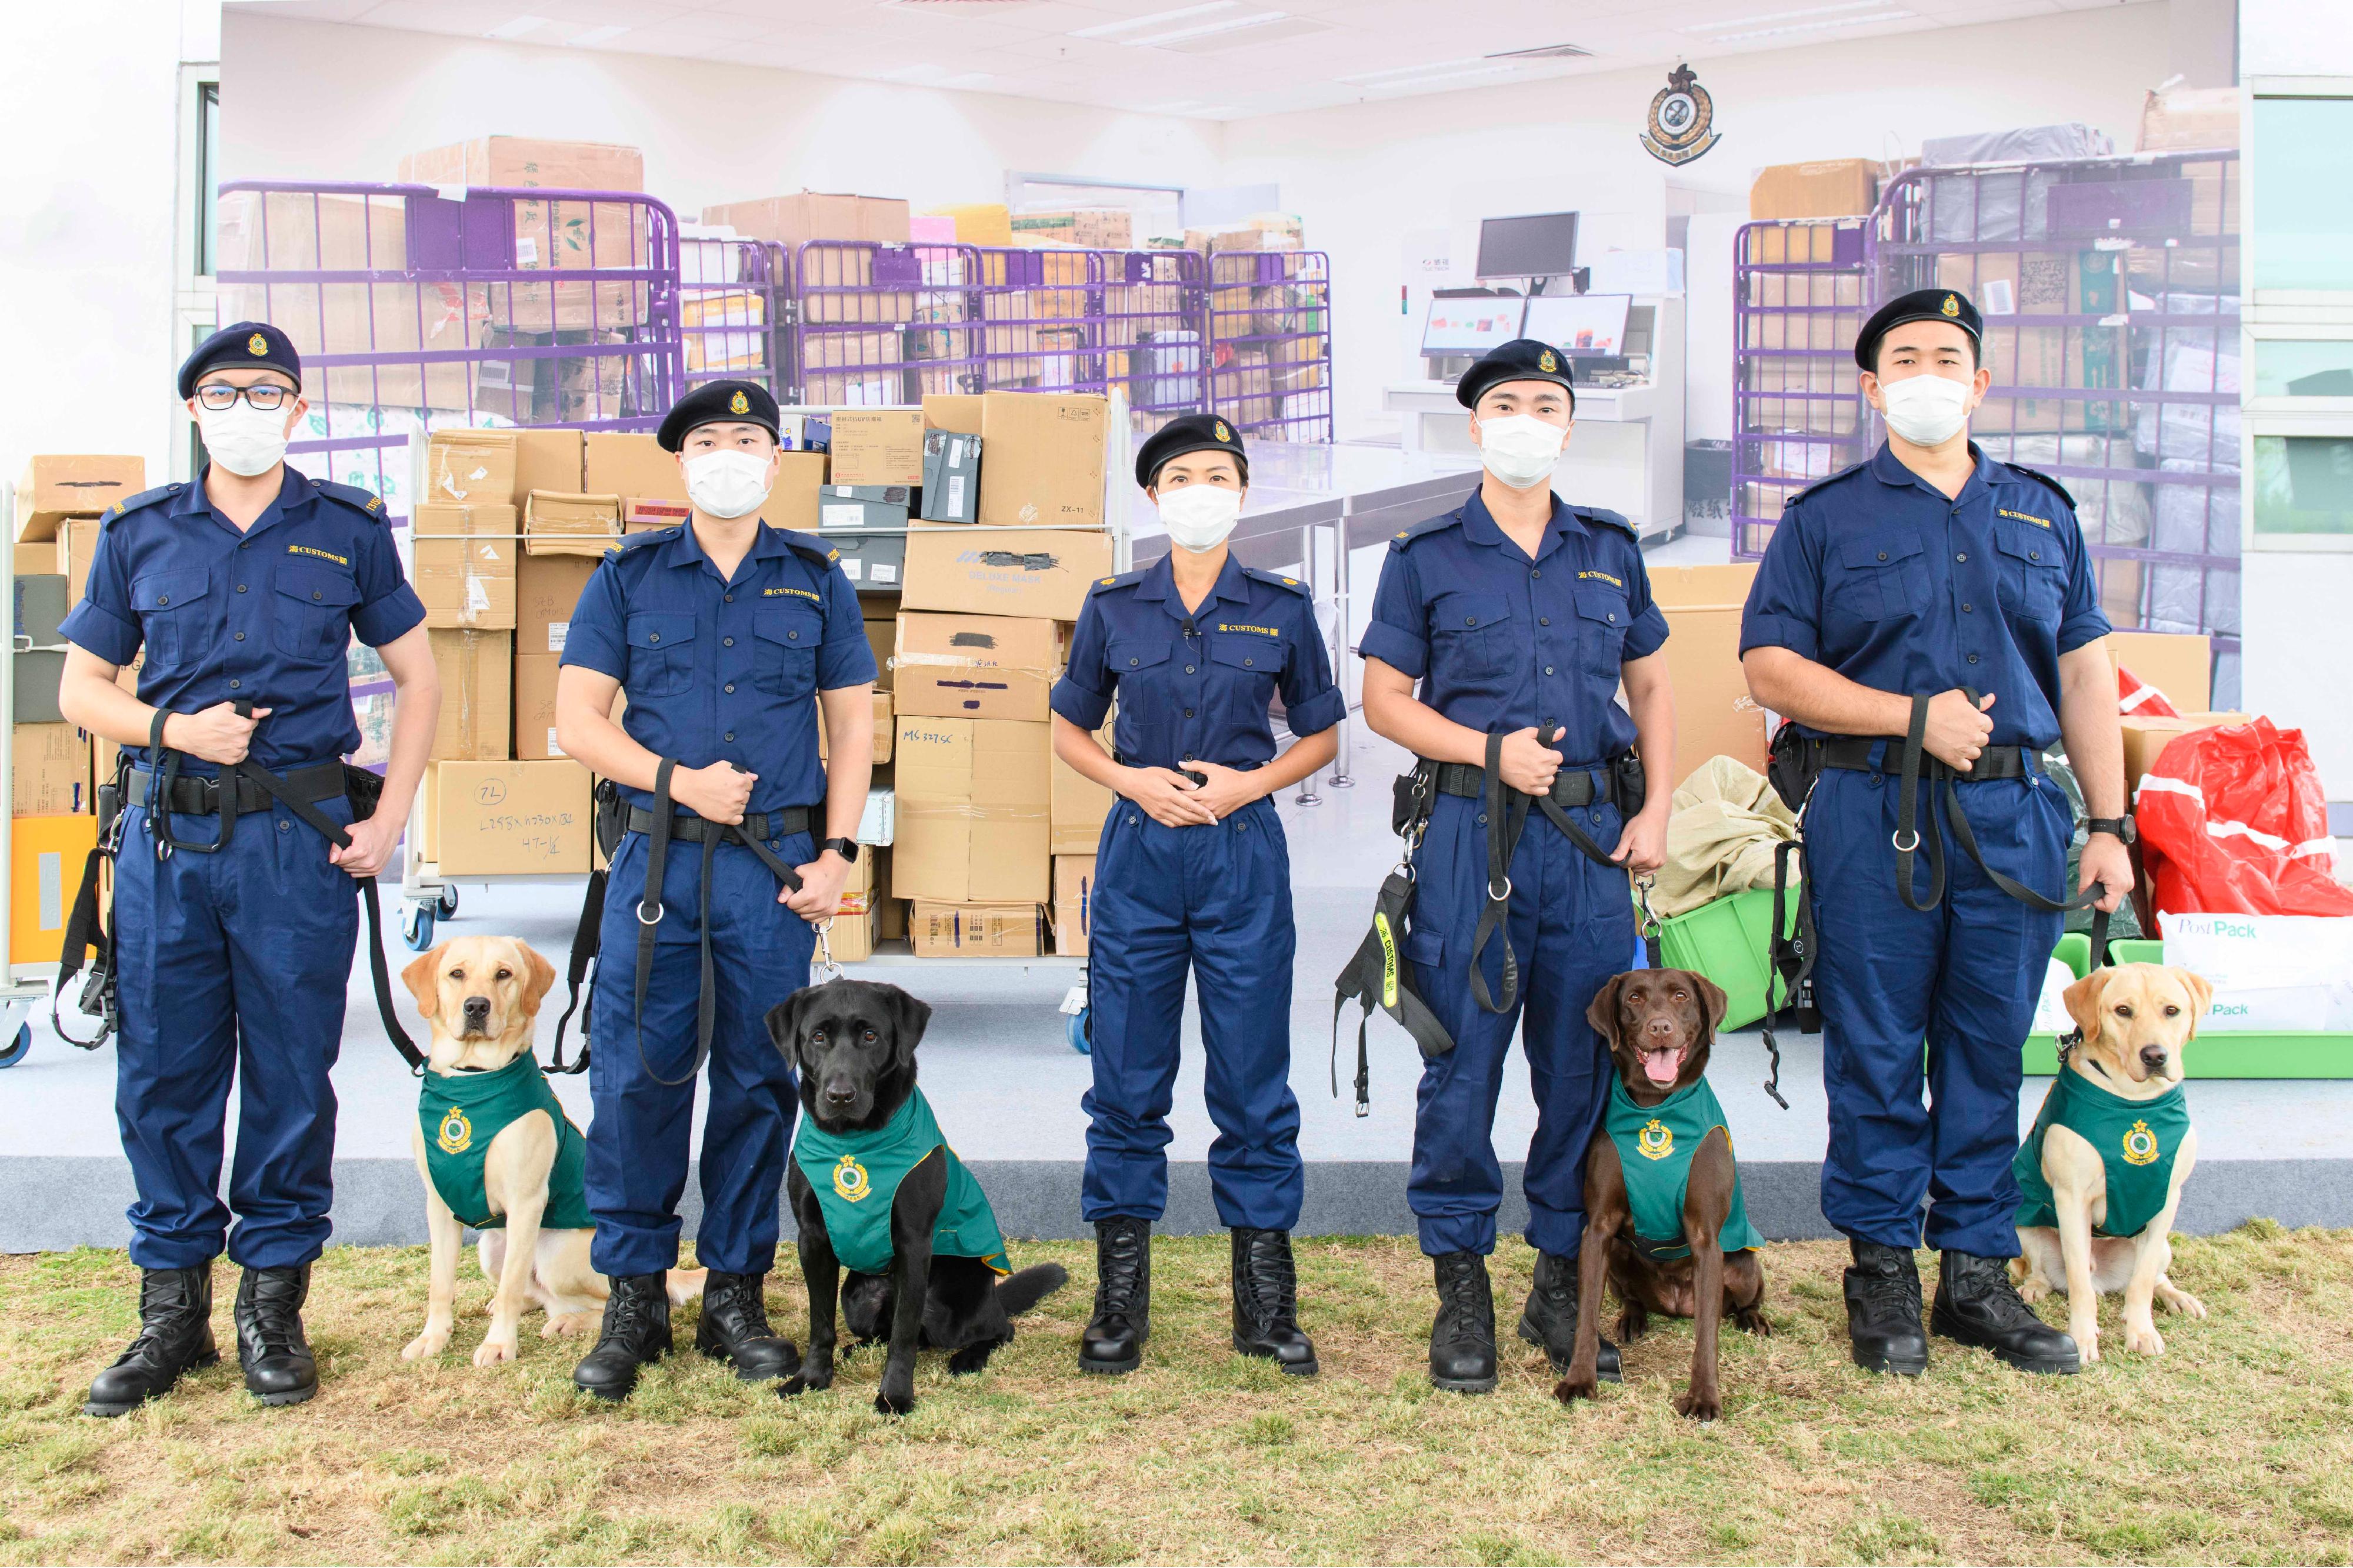 香港海關今日（十二月十五日）公布，正式成立首支槍械搜查犬隊，以進一步加強海關在前線堵截非法槍械、槍械配件和彈藥流入香港的能力，防範恐怖活動，保護市民生命和維護國家安全。圖示海關搜查犬課監督黃惜忻（中）與四隻槍械搜查犬（左起）Nicky、Wrangler、Quick和Gasper及牠們的領犬員合照。